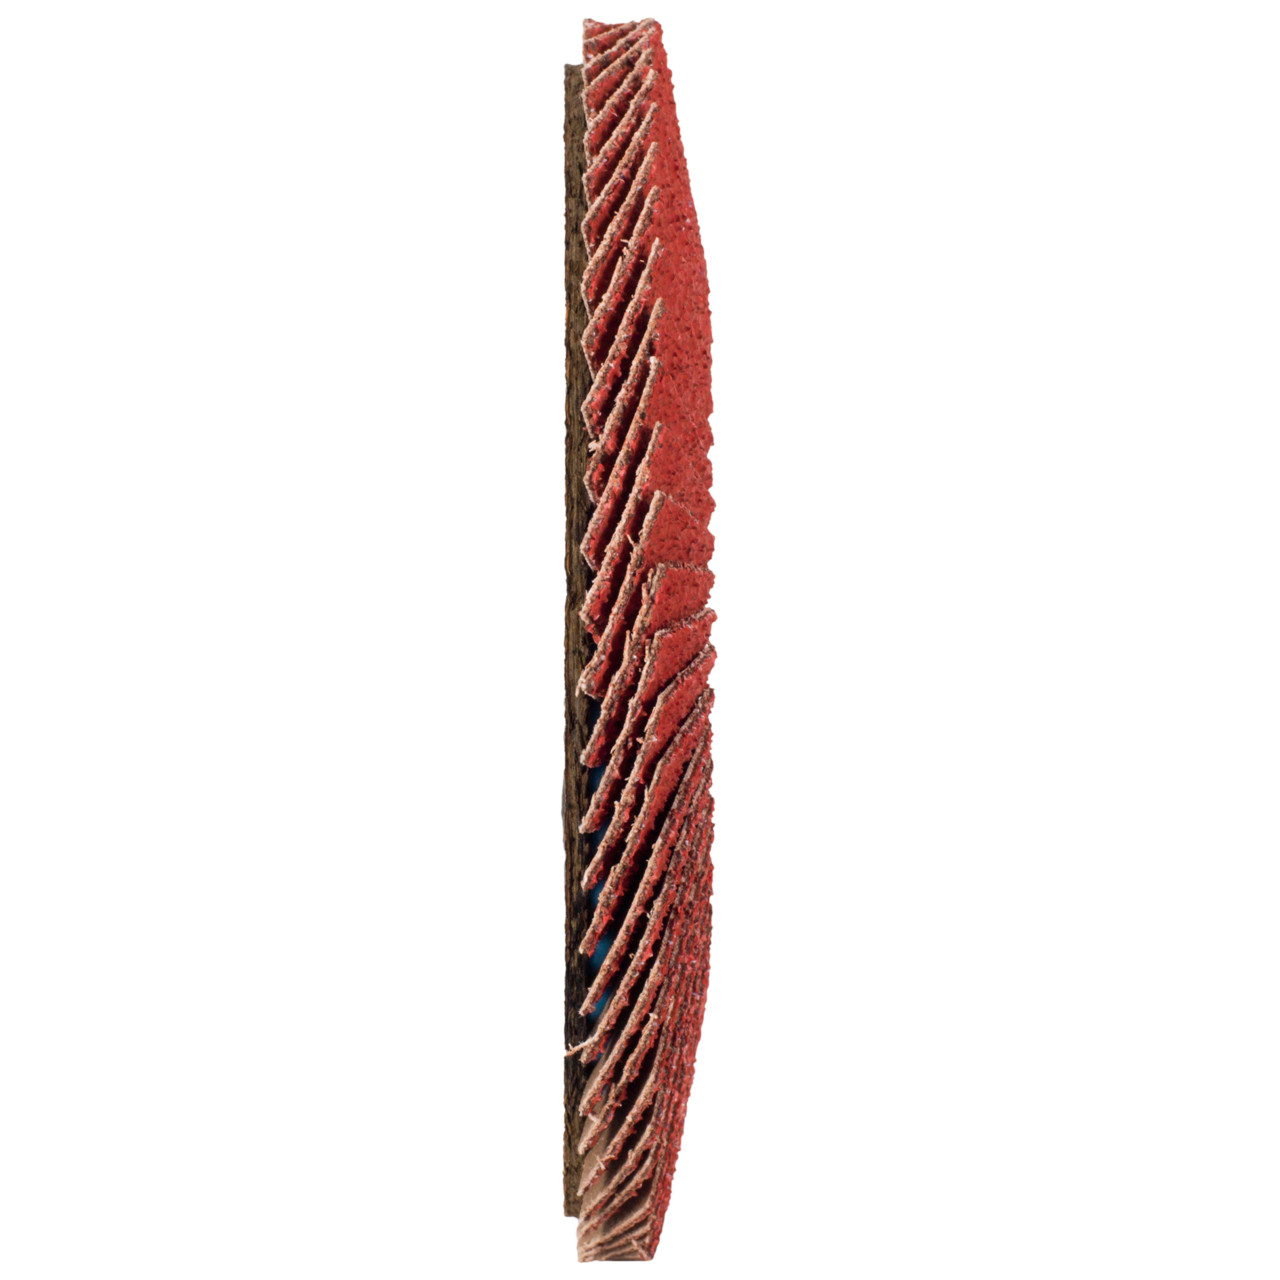 Tyrolit Rondelle éventail DxH 115x22,23 CERABOND Rondelle éventail pour acier inoxydable, P40, forme : 28A - modèle droit (modèle à corps en fibre de verre), Art. 34166172